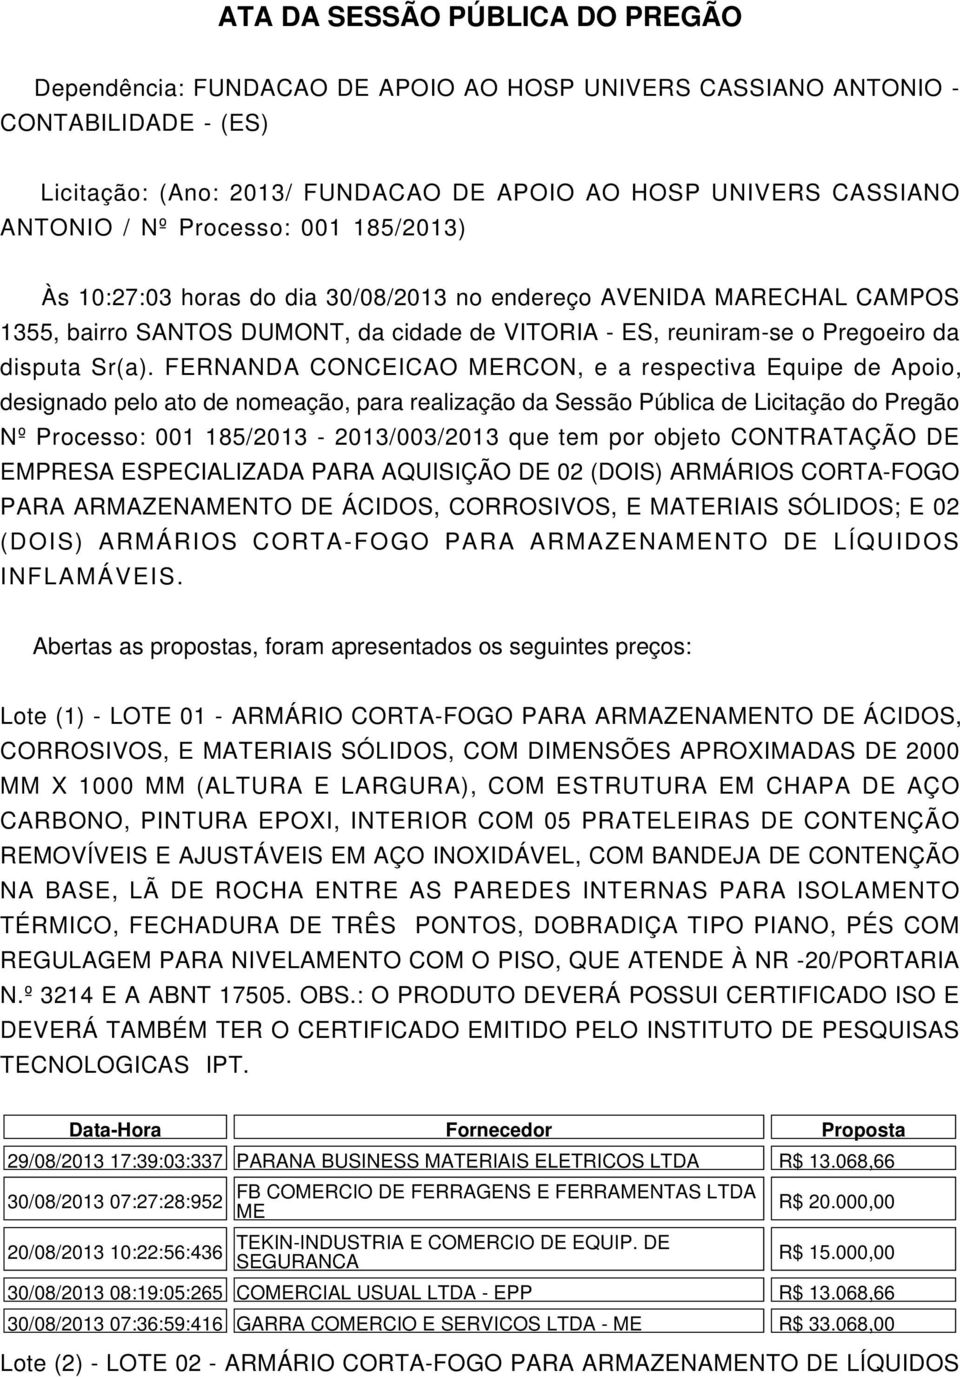 FERNANDA CONCEICAO RCON, e a respectiva Equipe de Apoio, designado pelo ato de nomeação, para realização da Sessão Pública de Licitação do Pregão Nº Processo: 001 185/2013-2013/003/2013 que tem por